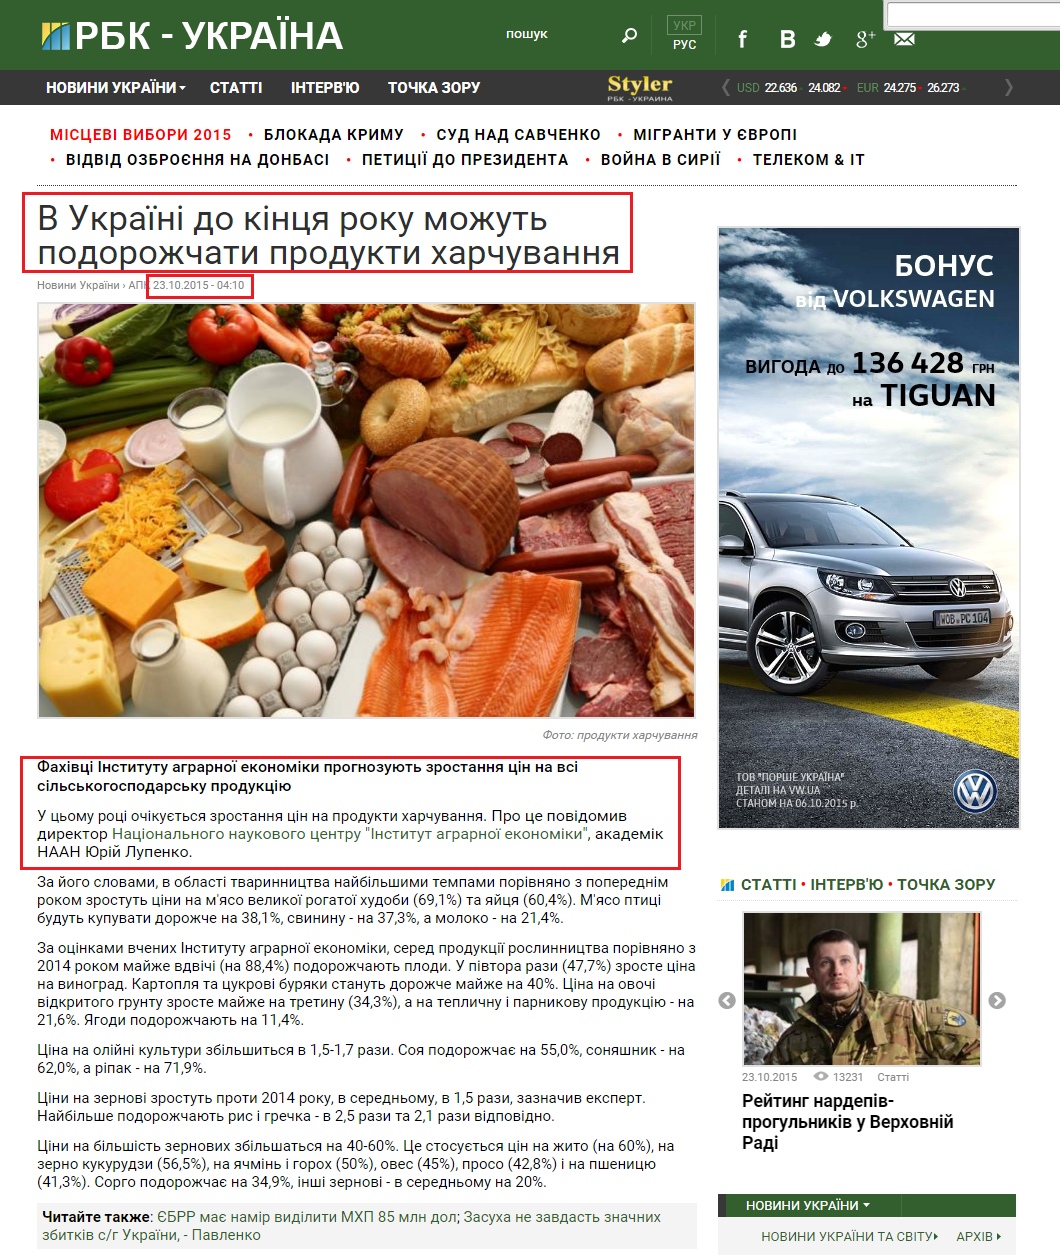 http://www.rbc.ua/ukr/news/ukraine-kontsa-goda-mogut-podorozhat-produkty-1445516836.html